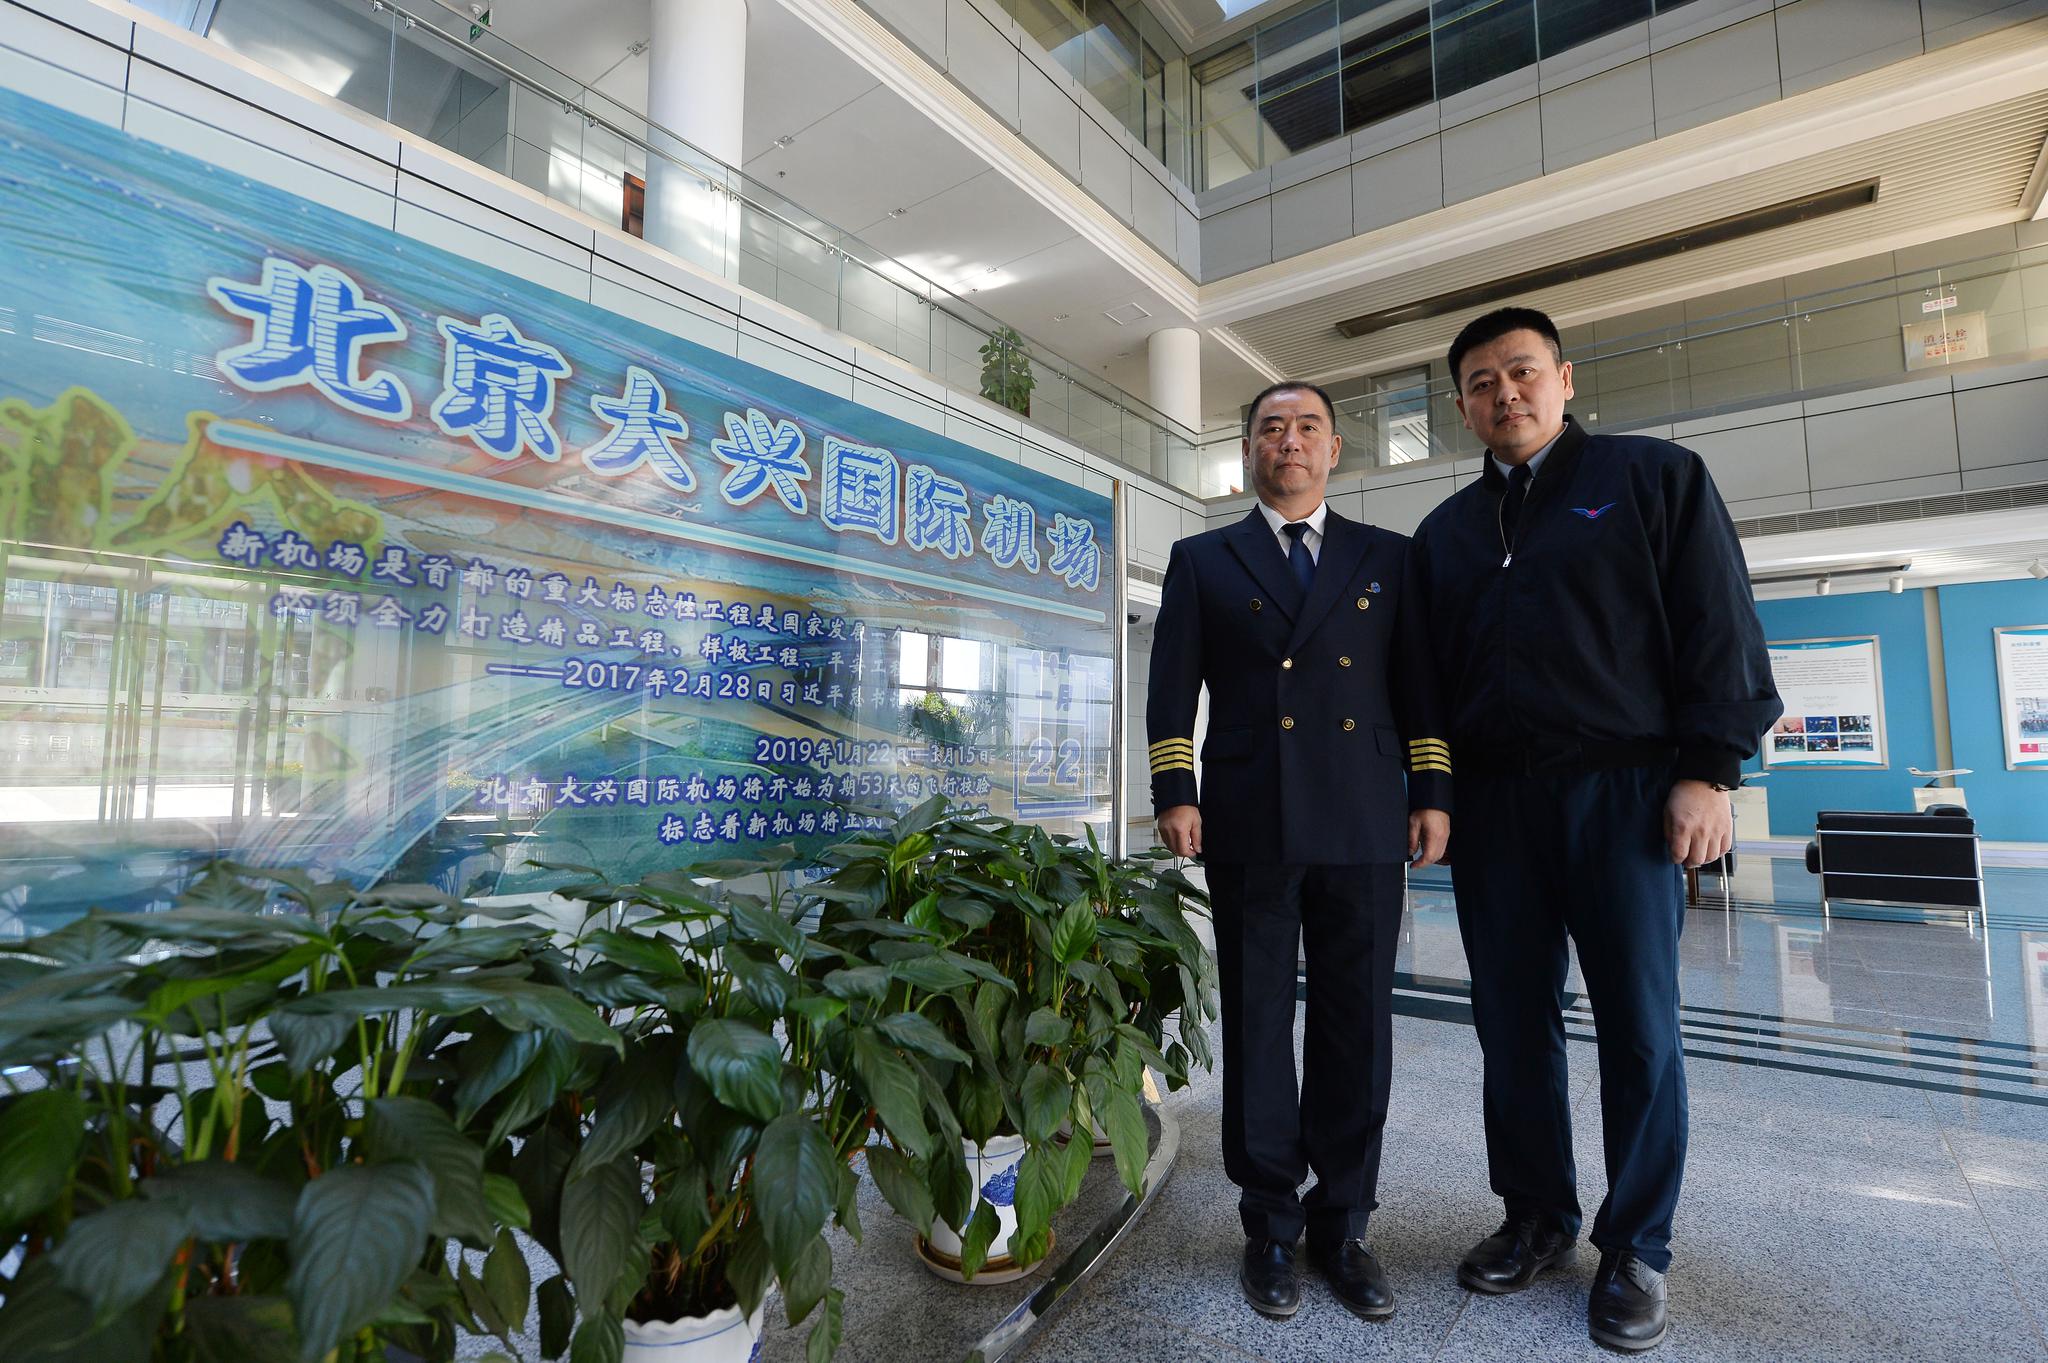  校飞中心魏刚（左）和彭泉担任大兴国际机场首场校飞飞行员。摄影/新京报记者 李木易